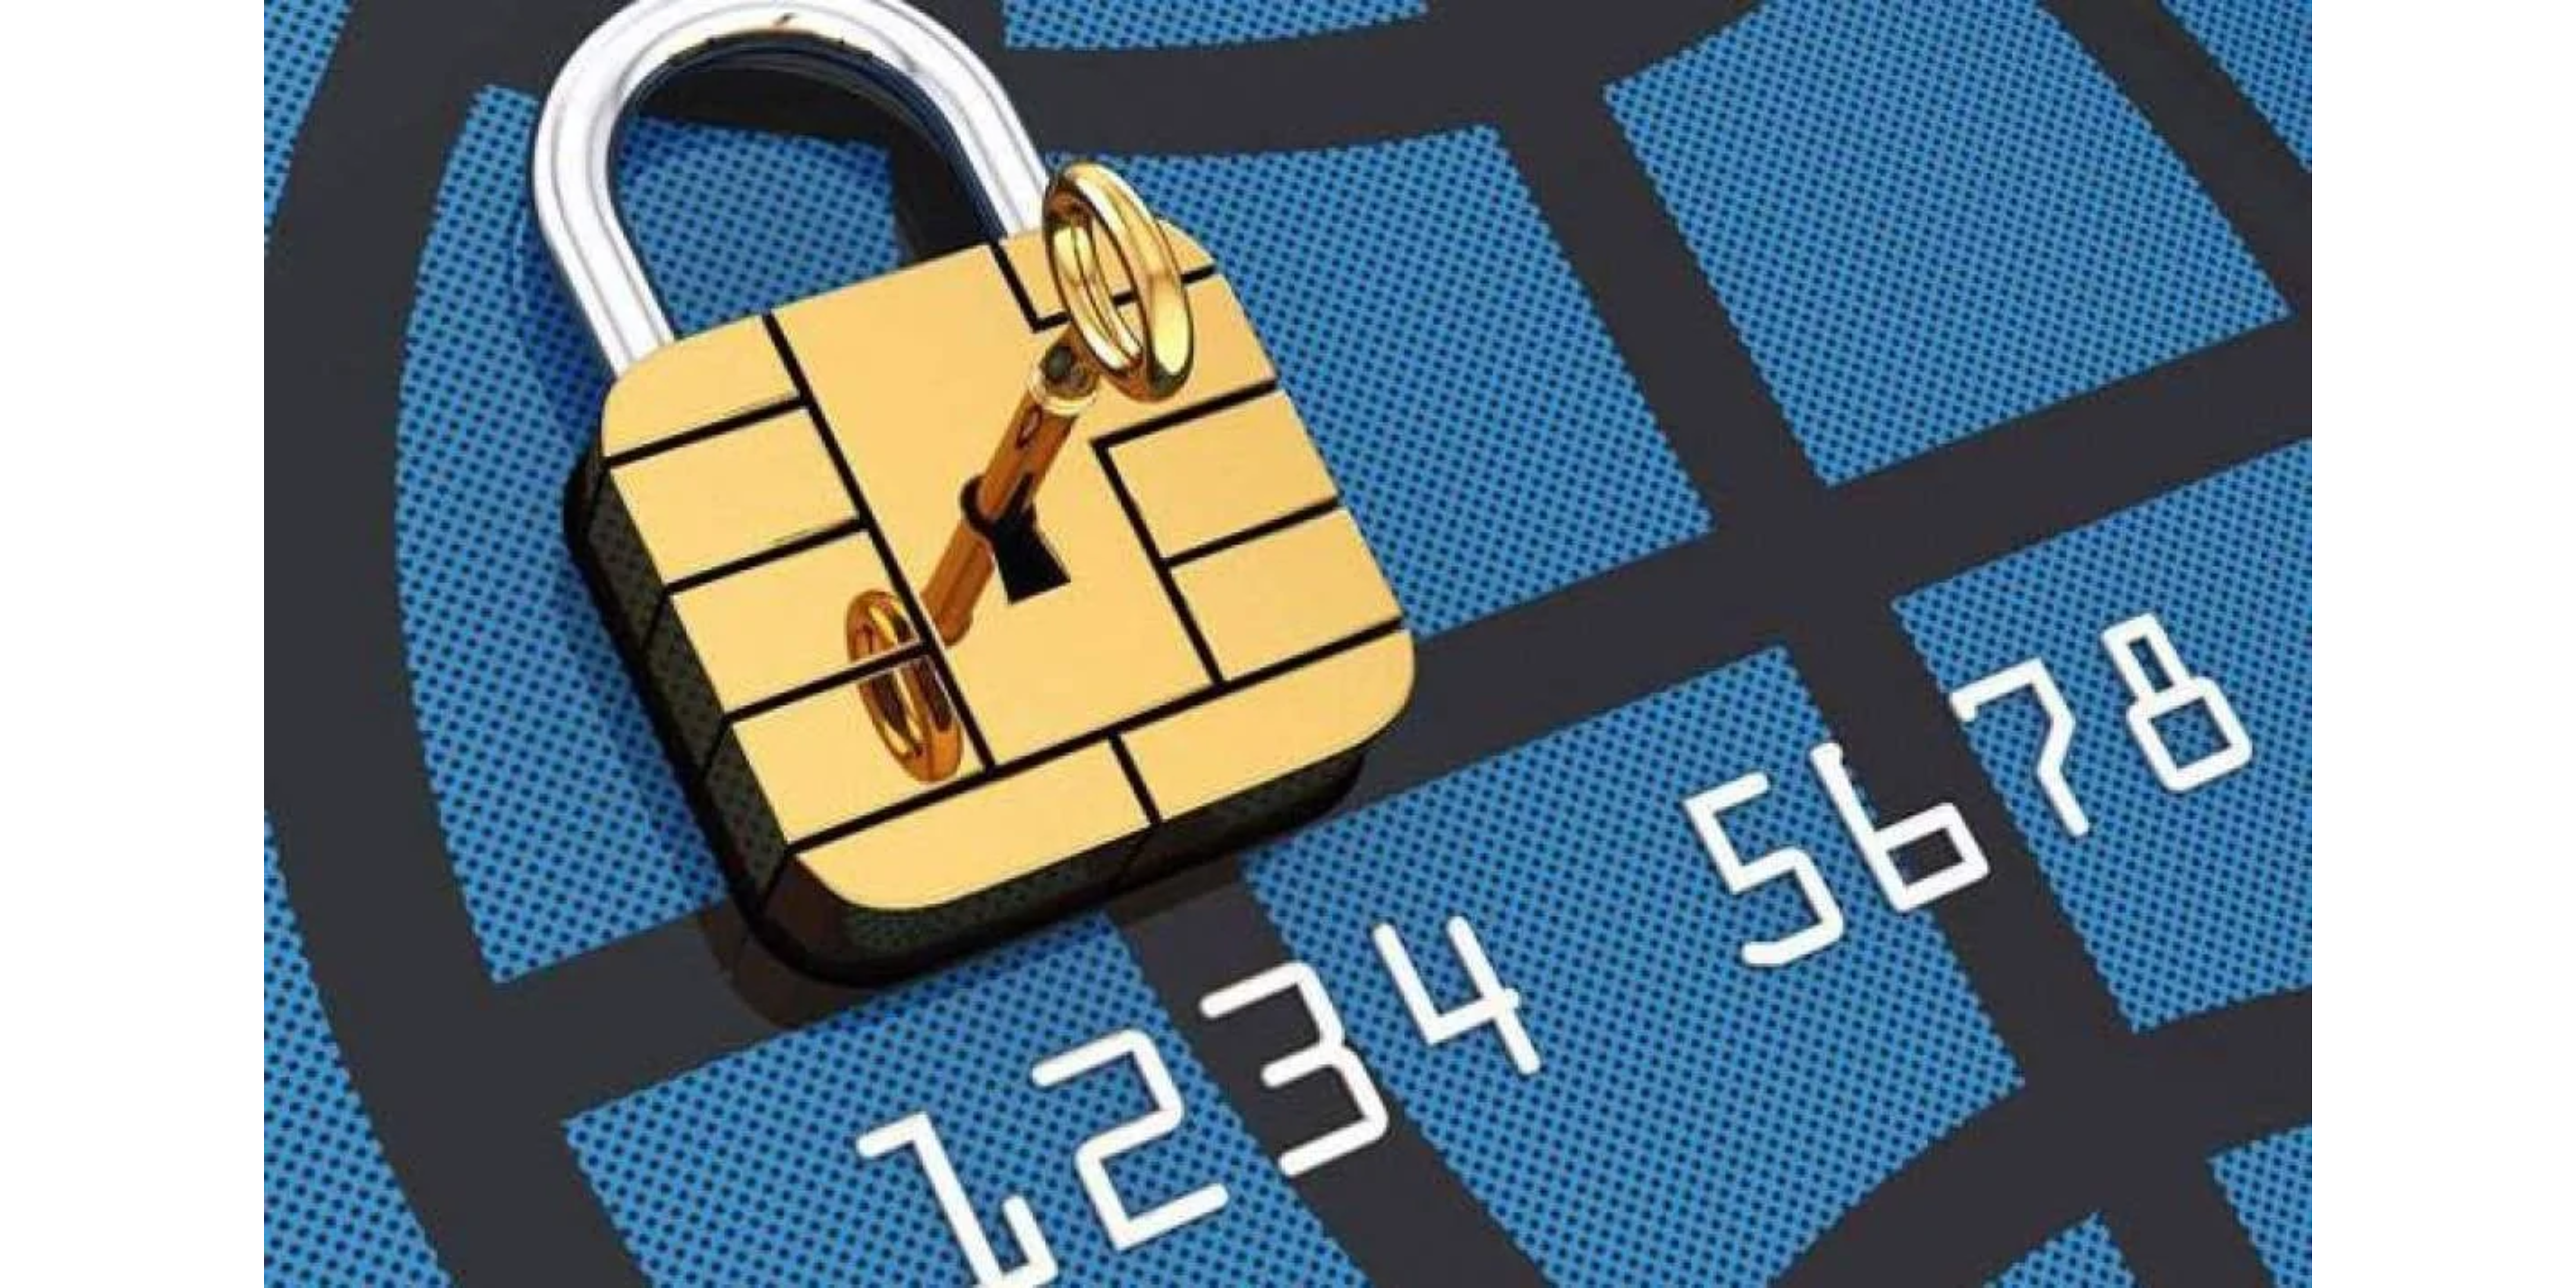 Cách xử lý nếu bạn quên mã PIN của thẻ tín dụng khi rút tiền.